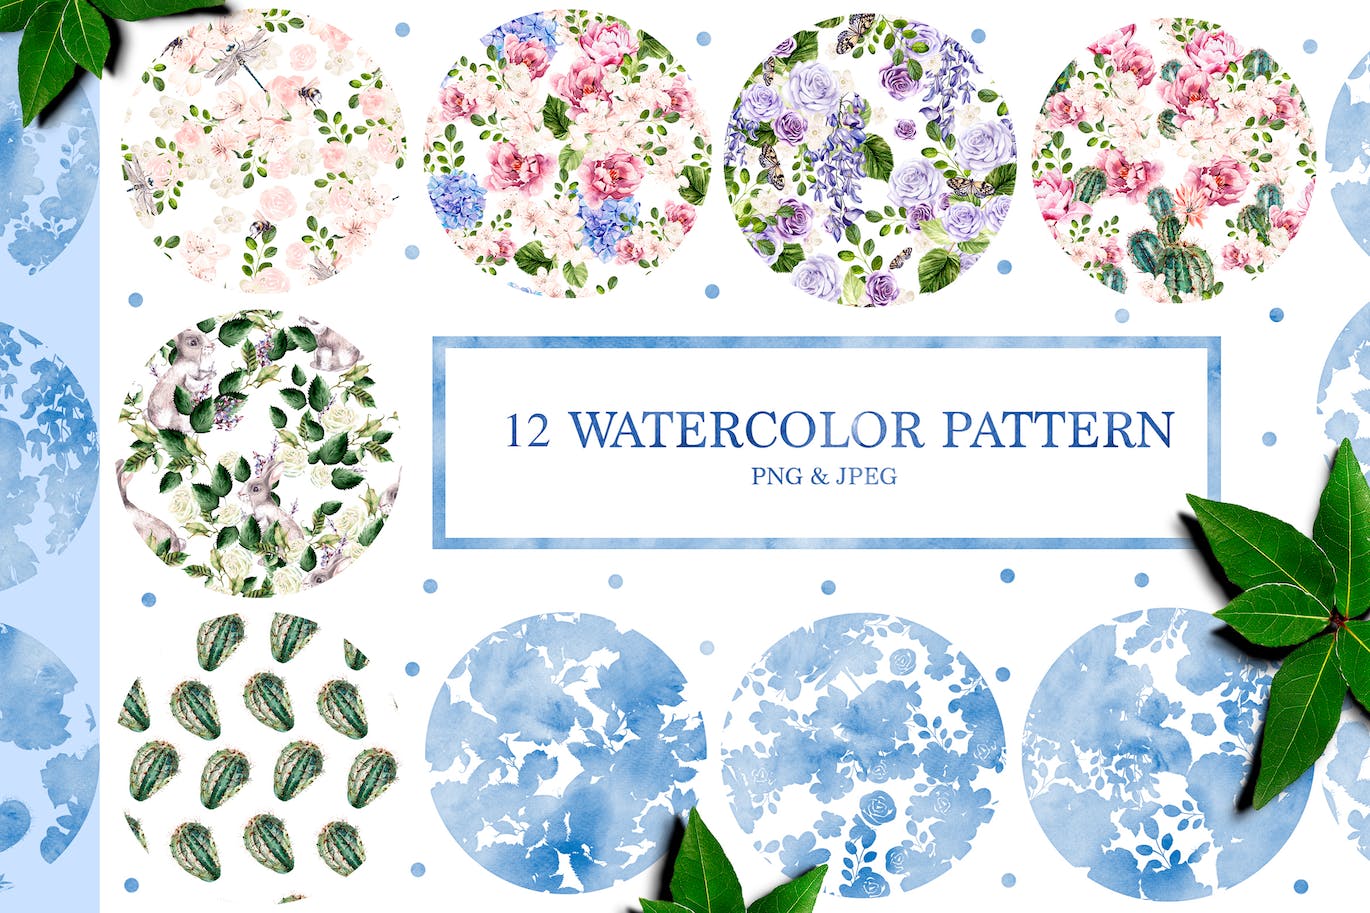 12个水彩花朵图案素材 12 Watercolor Patterns 图片素材 第1张